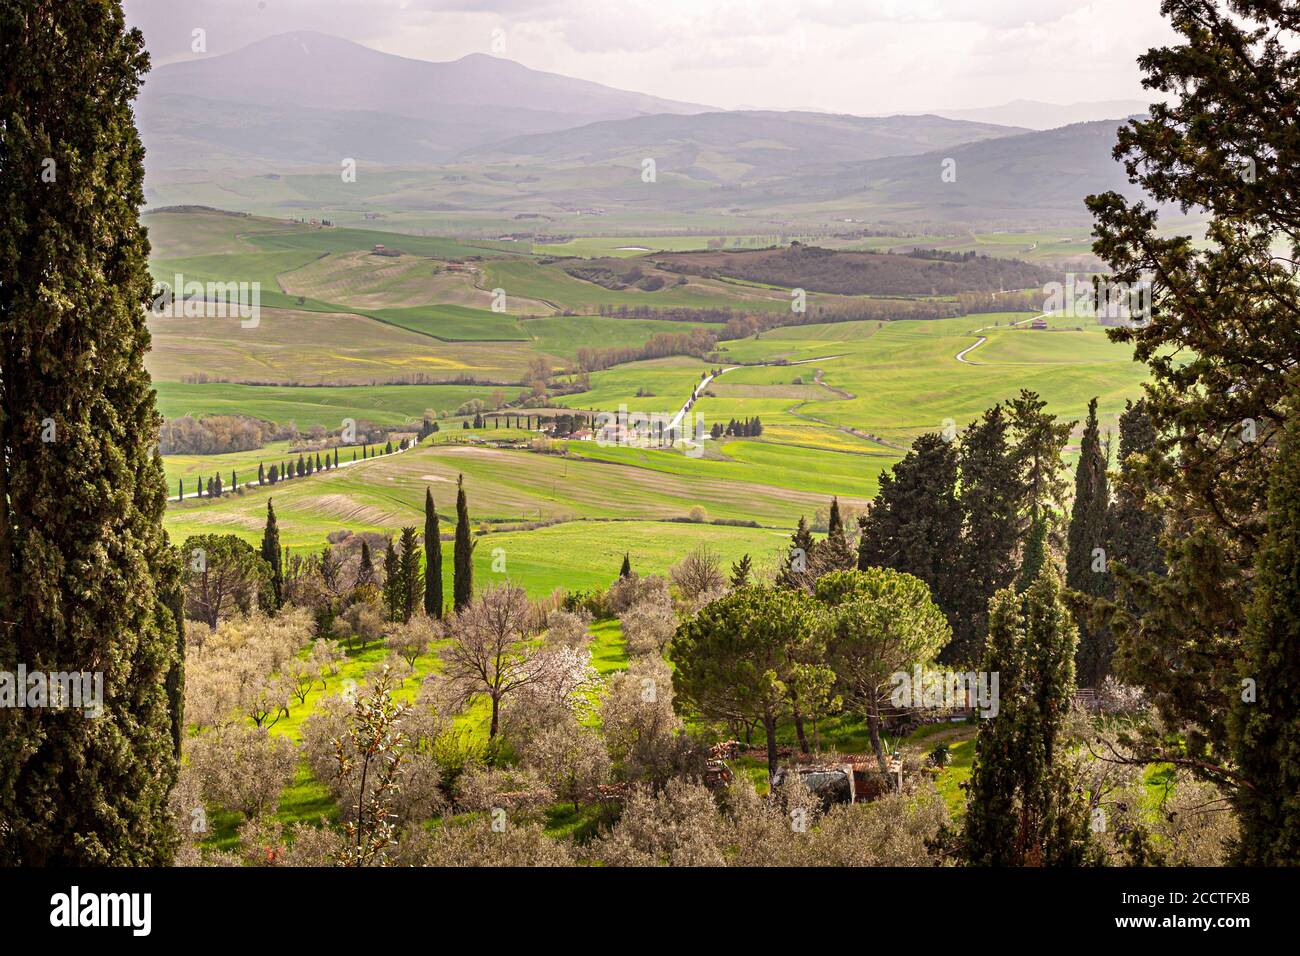 View of the picturesque Tuscany from Pienza, Unione dei Comuni Valdichiana Senese, Italy Stock Photo